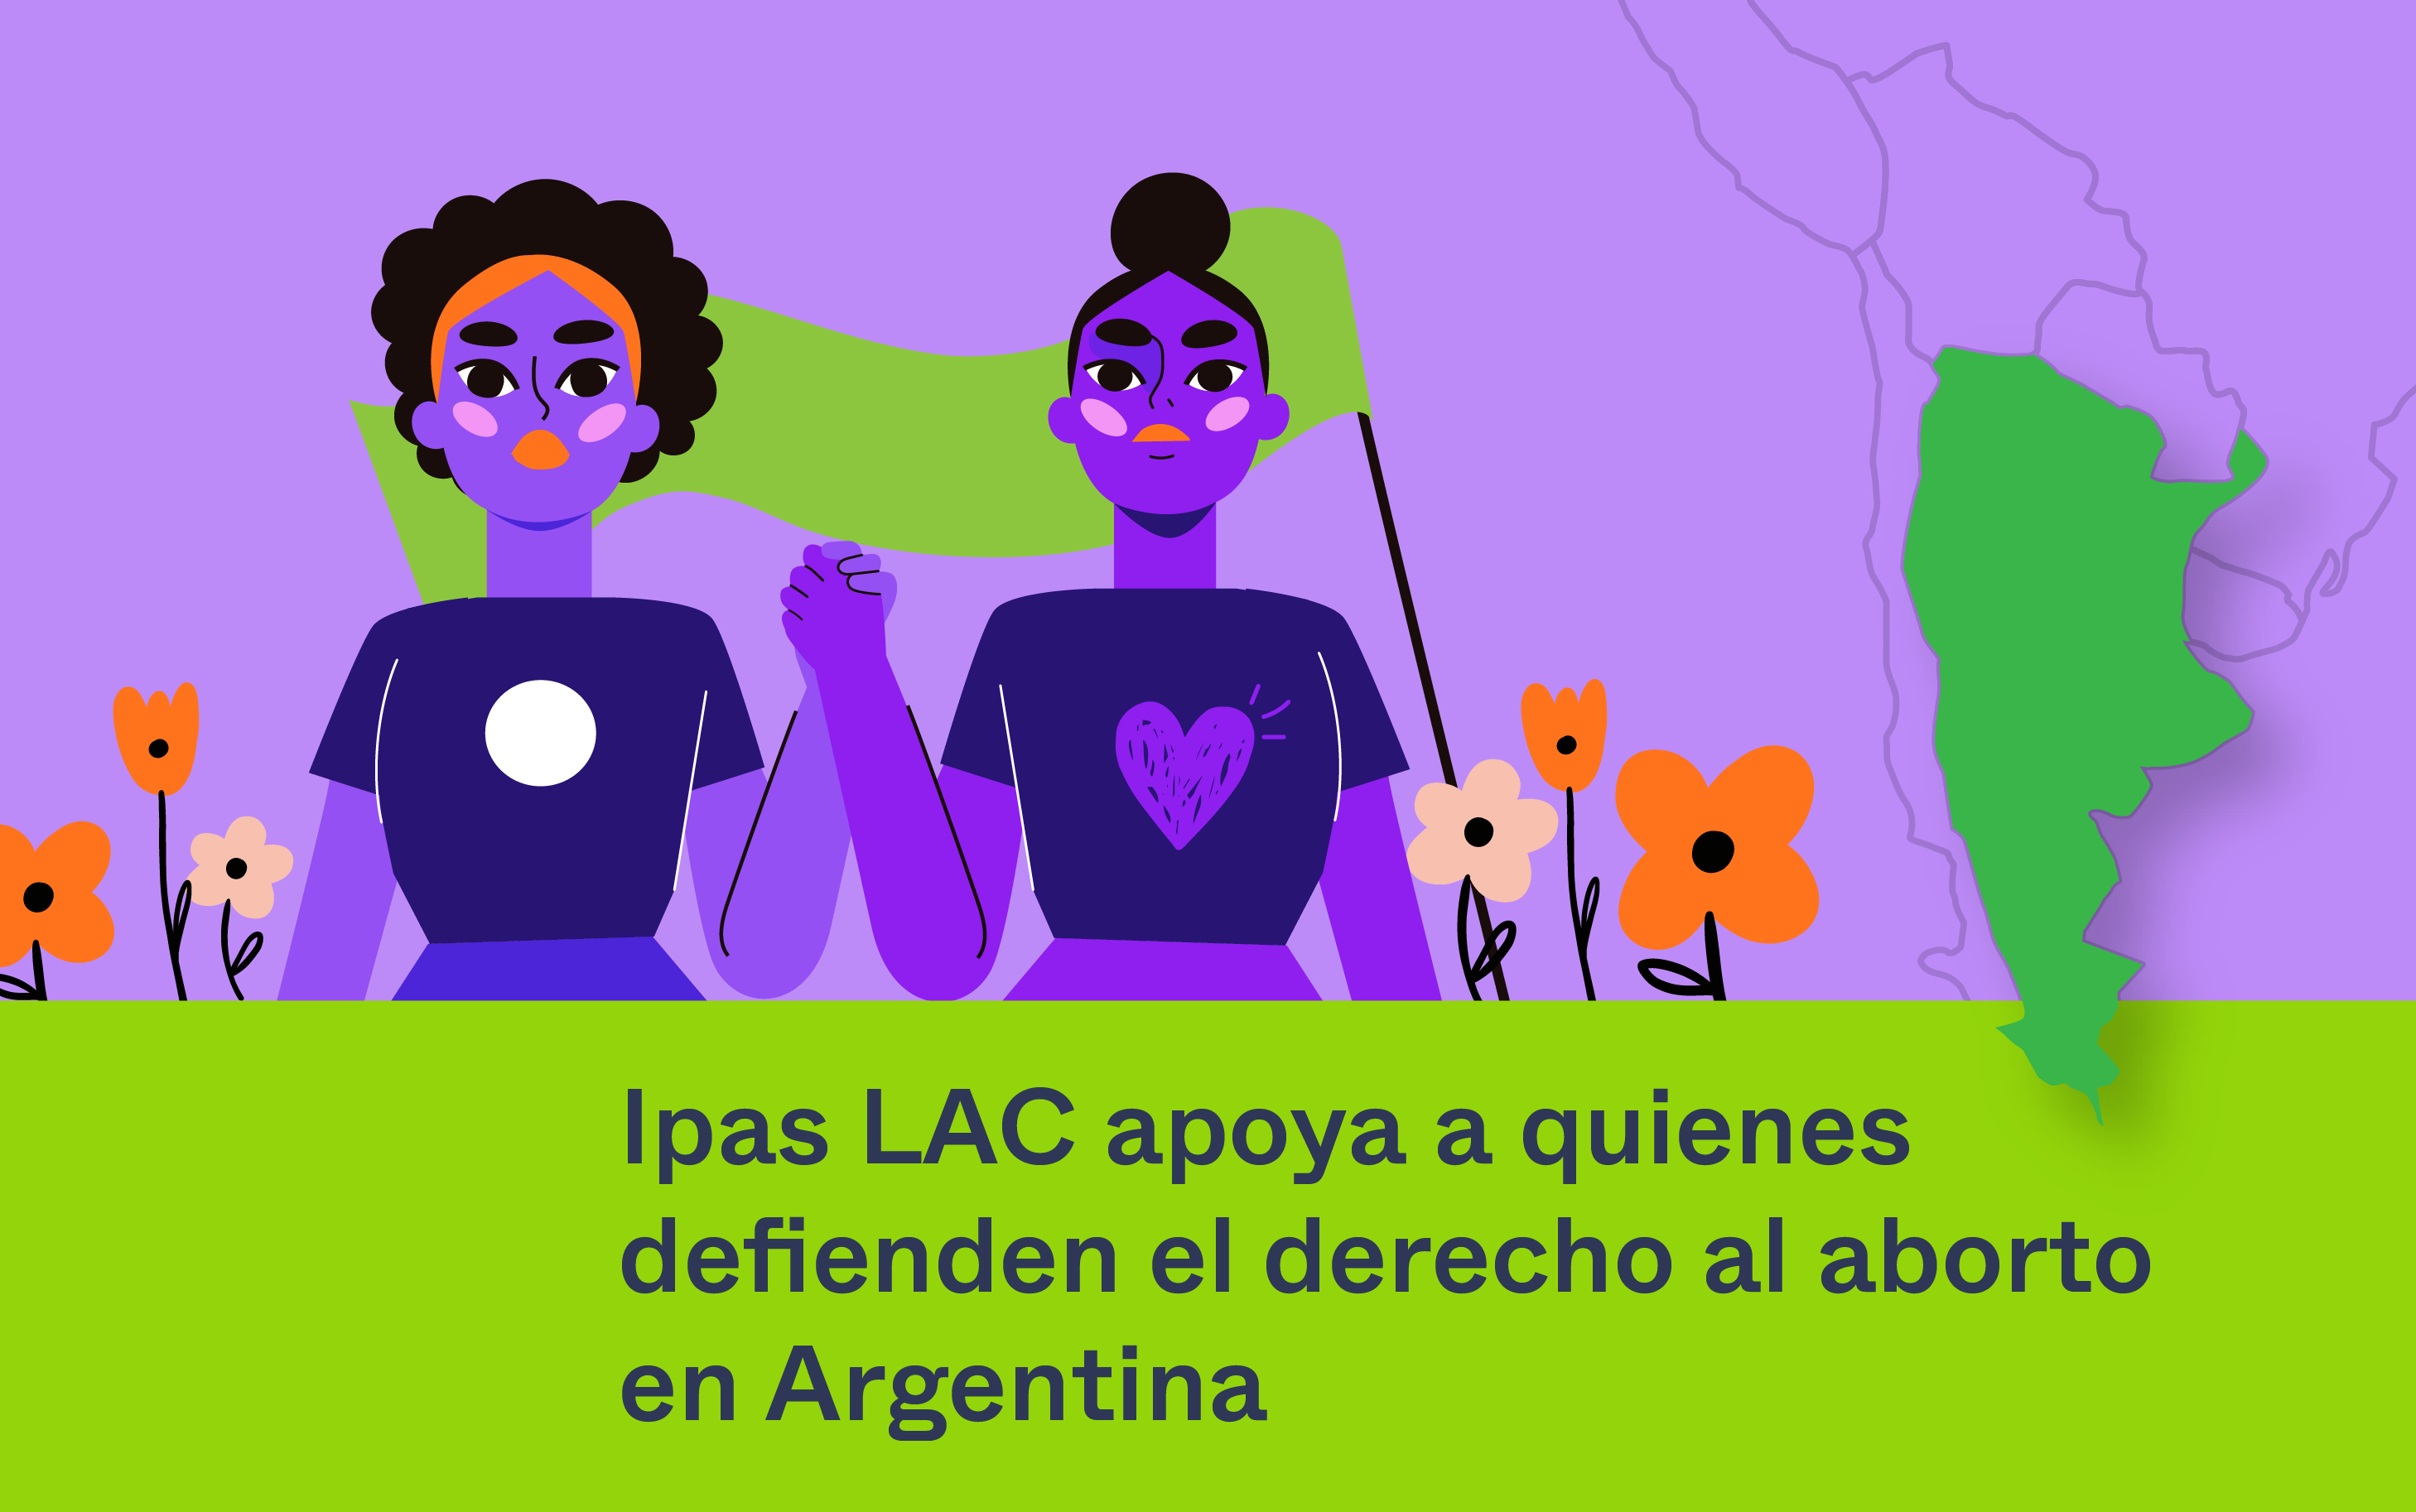 Ipas LAC apoya a quienes defienden el derecho al aborto en Argentina